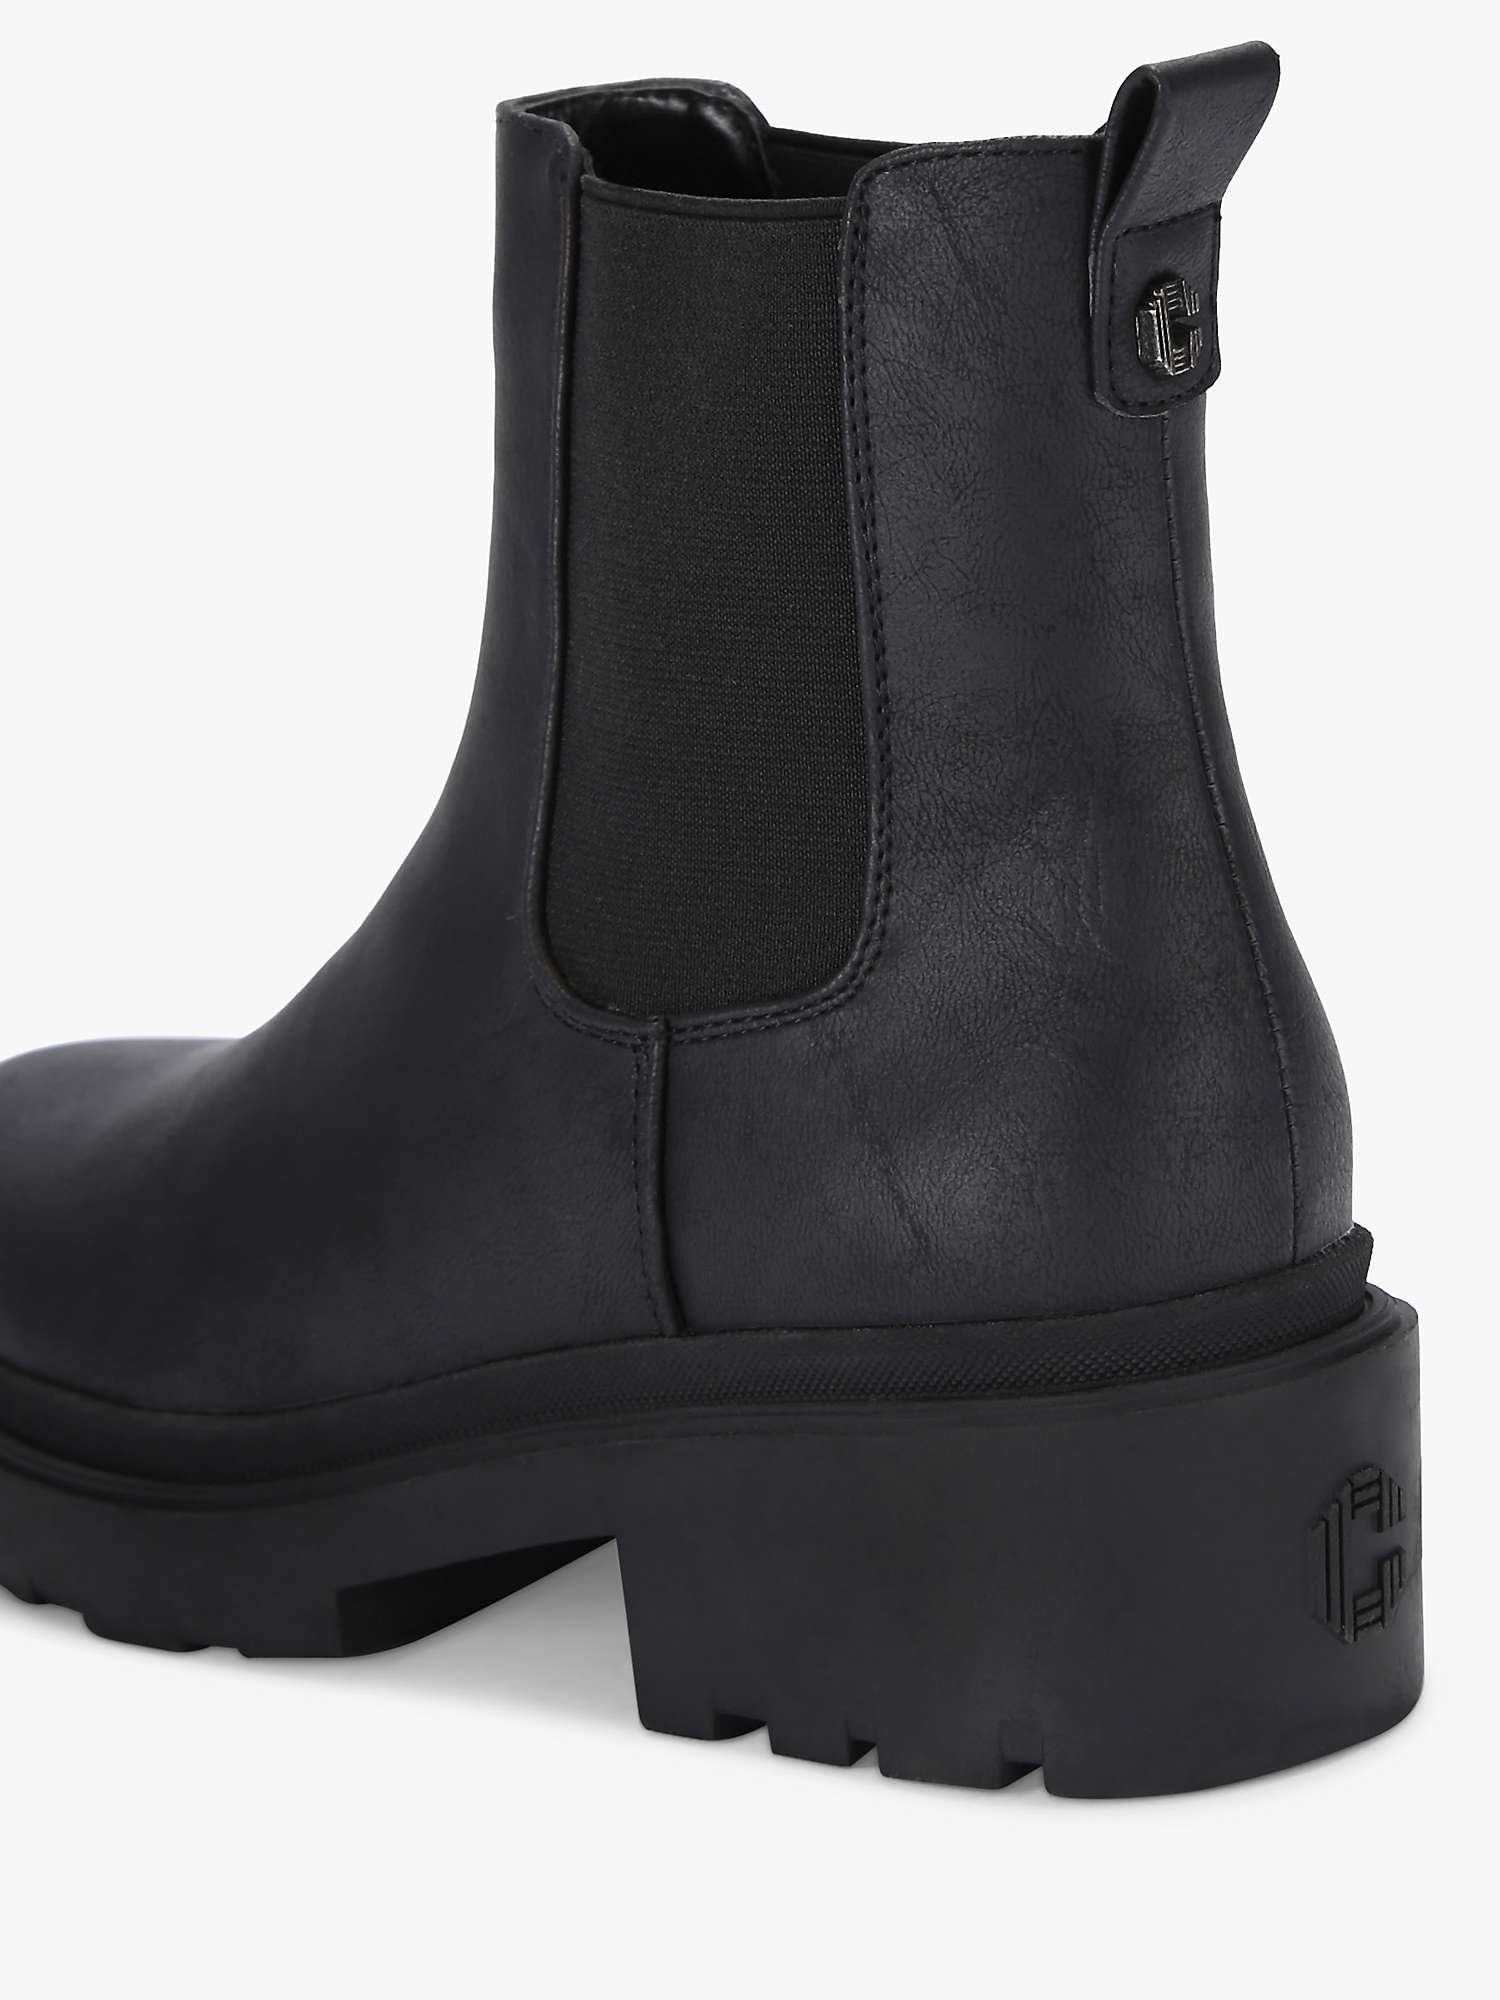 Buy Carvela Boulder Chelsea Boots, Black Online at johnlewis.com